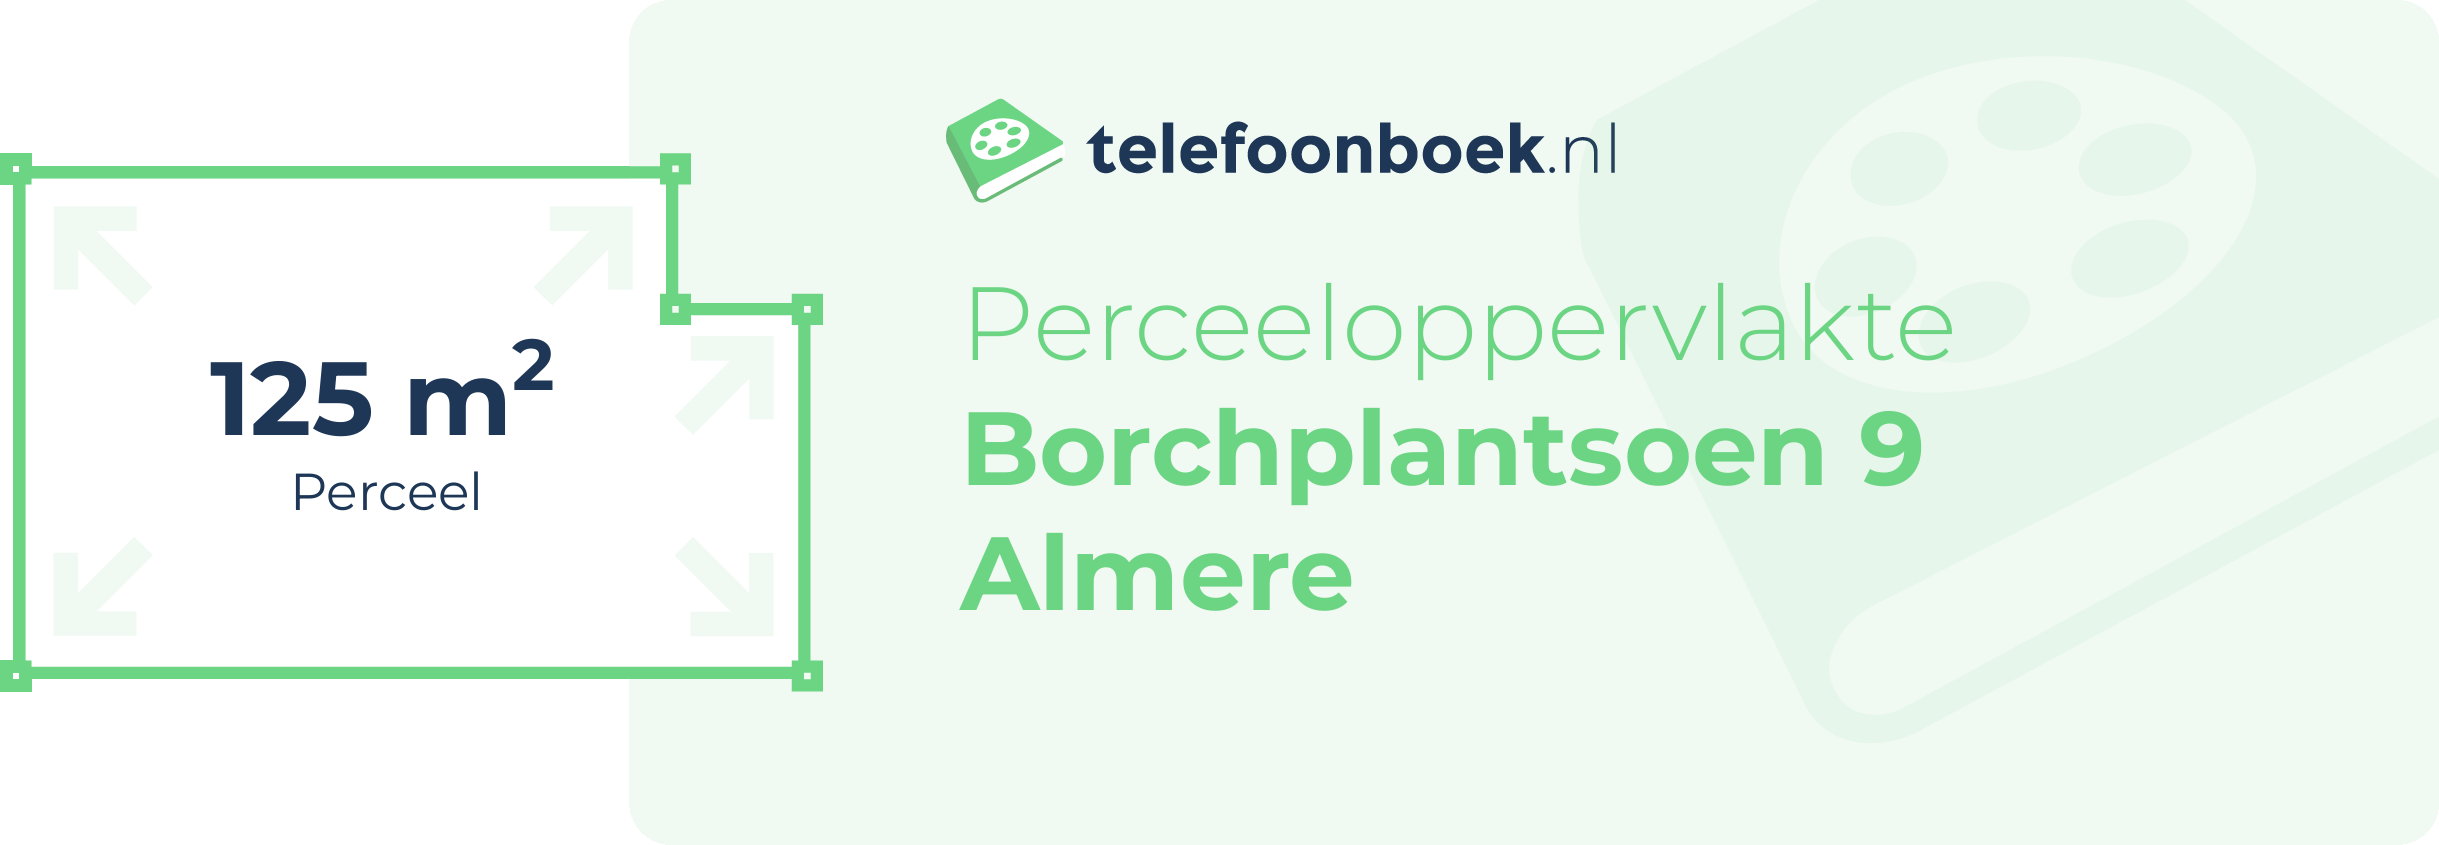 Perceeloppervlakte Borchplantsoen 9 Almere